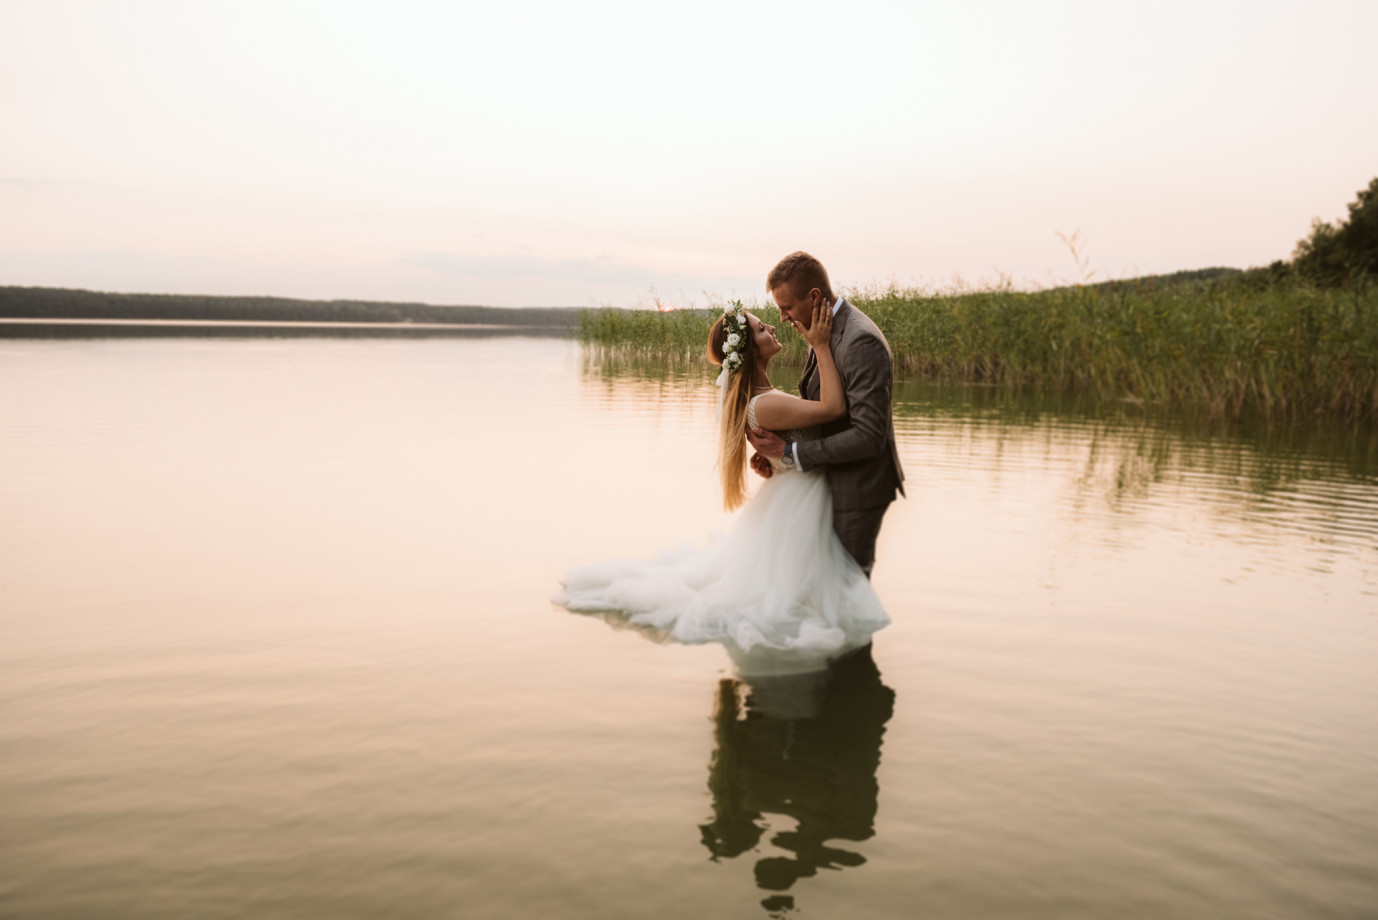 fotograf gdansk mariusz-tomzynski portfolio zdjecia slubne inspiracje wesele plener slubny sesja slubna